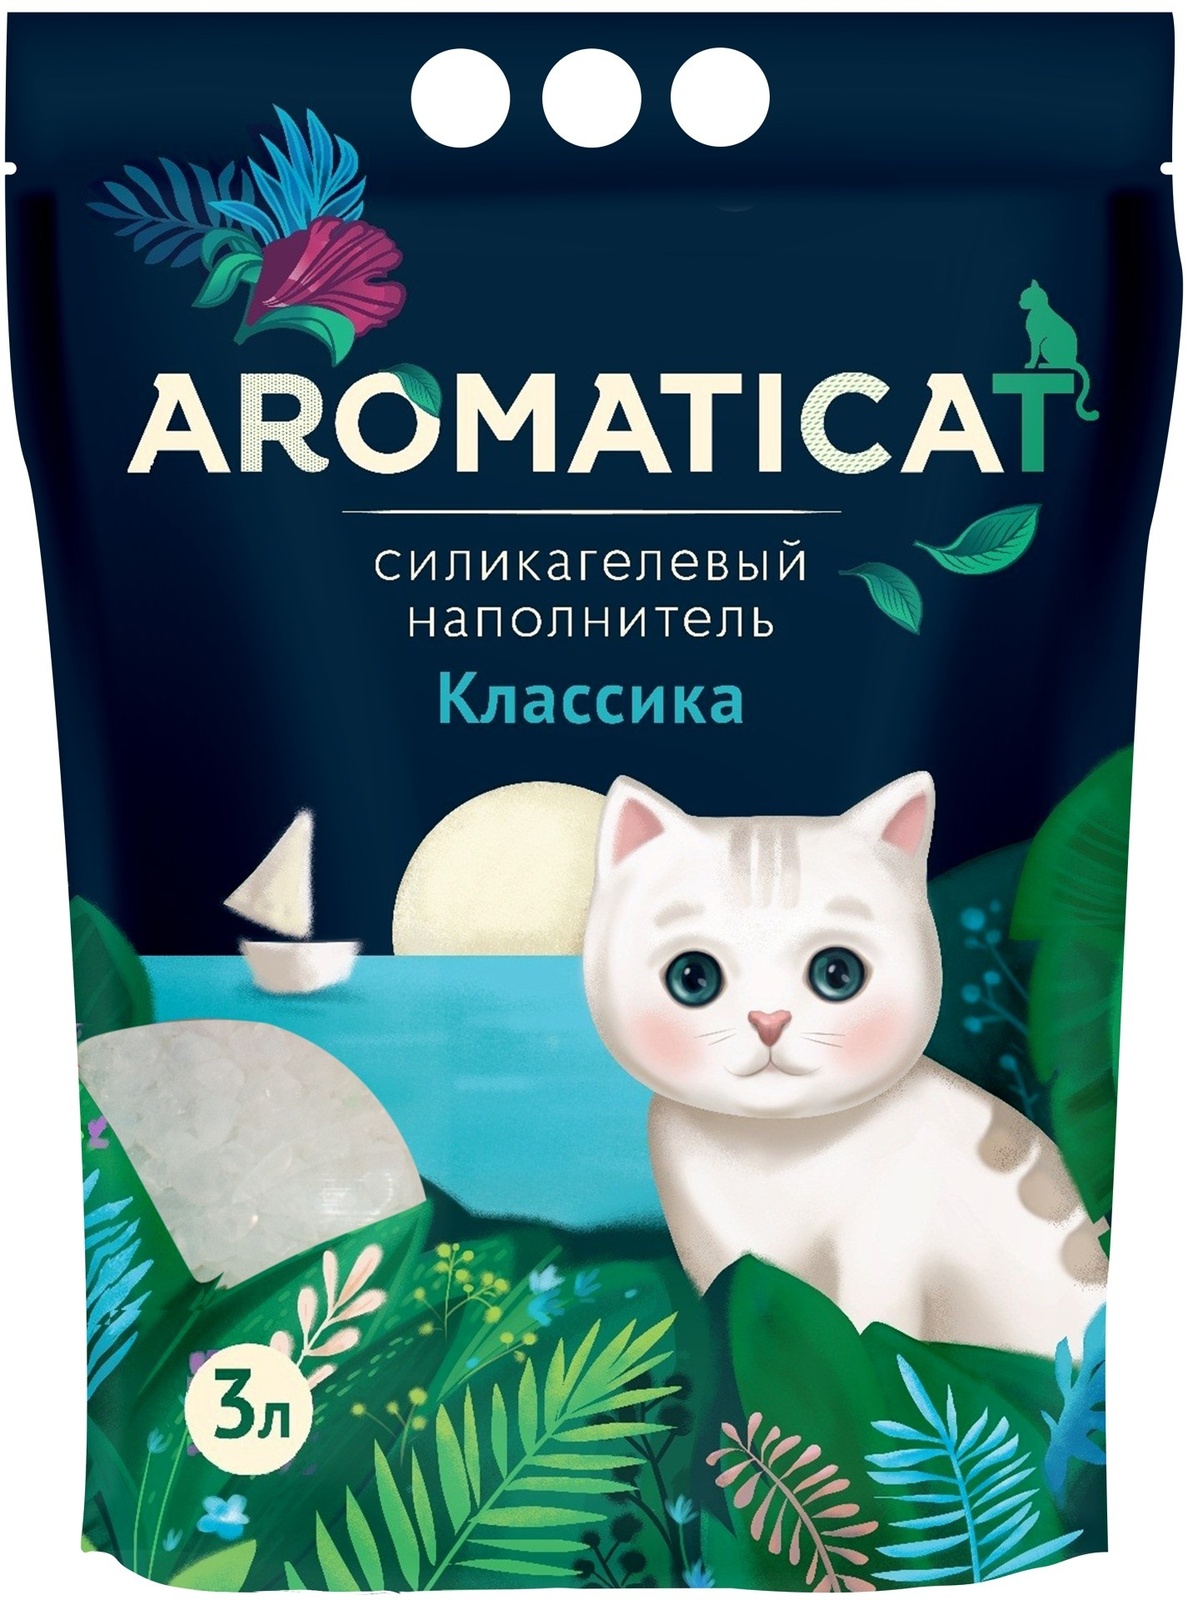 AromatiCat AromatiCat силикагелевый наполнитель Классика (1,25 кг) aromaticat aromaticat силикагелевый наполнитель диагностический 1 25 кг